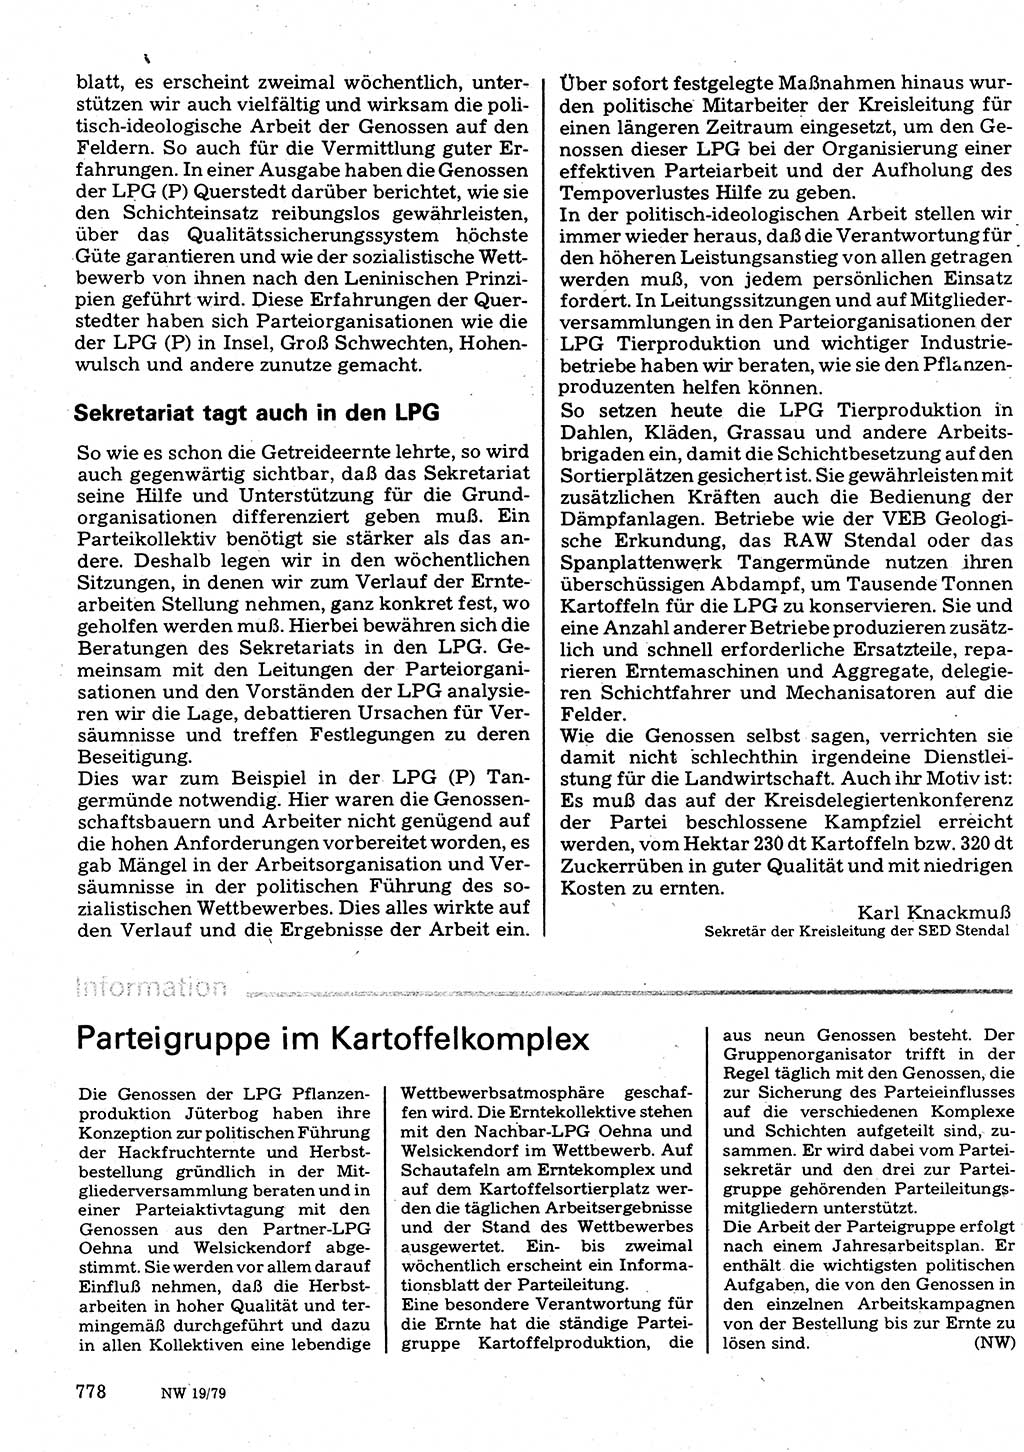 Neuer Weg (NW), Organ des Zentralkomitees (ZK) der SED (Sozialistische Einheitspartei Deutschlands) für Fragen des Parteilebens, 34. Jahrgang [Deutsche Demokratische Republik (DDR)] 1979, Seite 778 (NW ZK SED DDR 1979, S. 778)